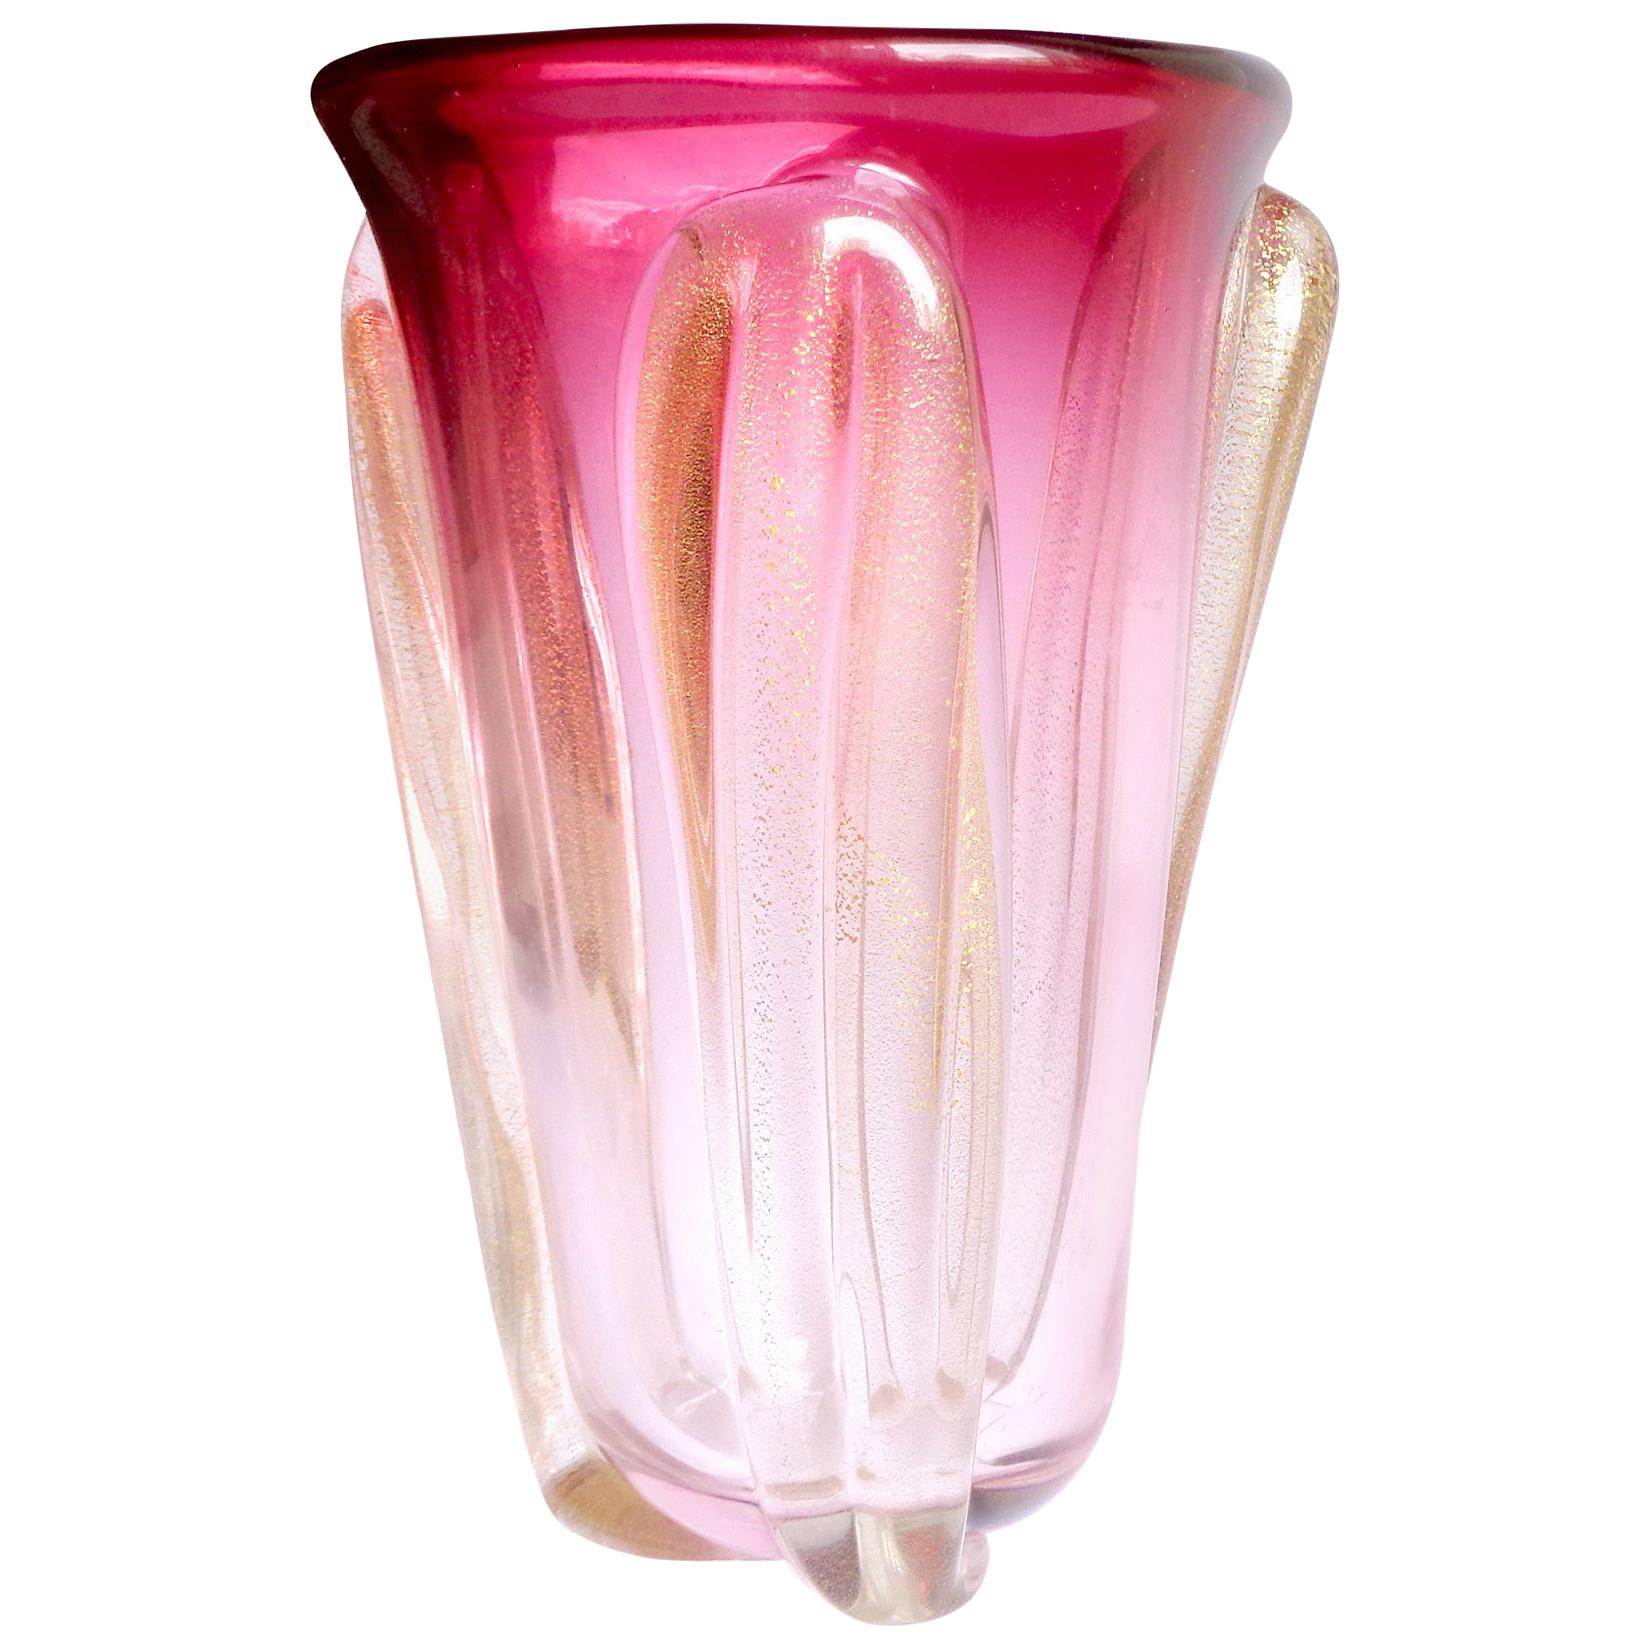 Seguso Murano Red to Pink Sommerso Gold Flecks Italian Art Glass Flower Vase For Sale